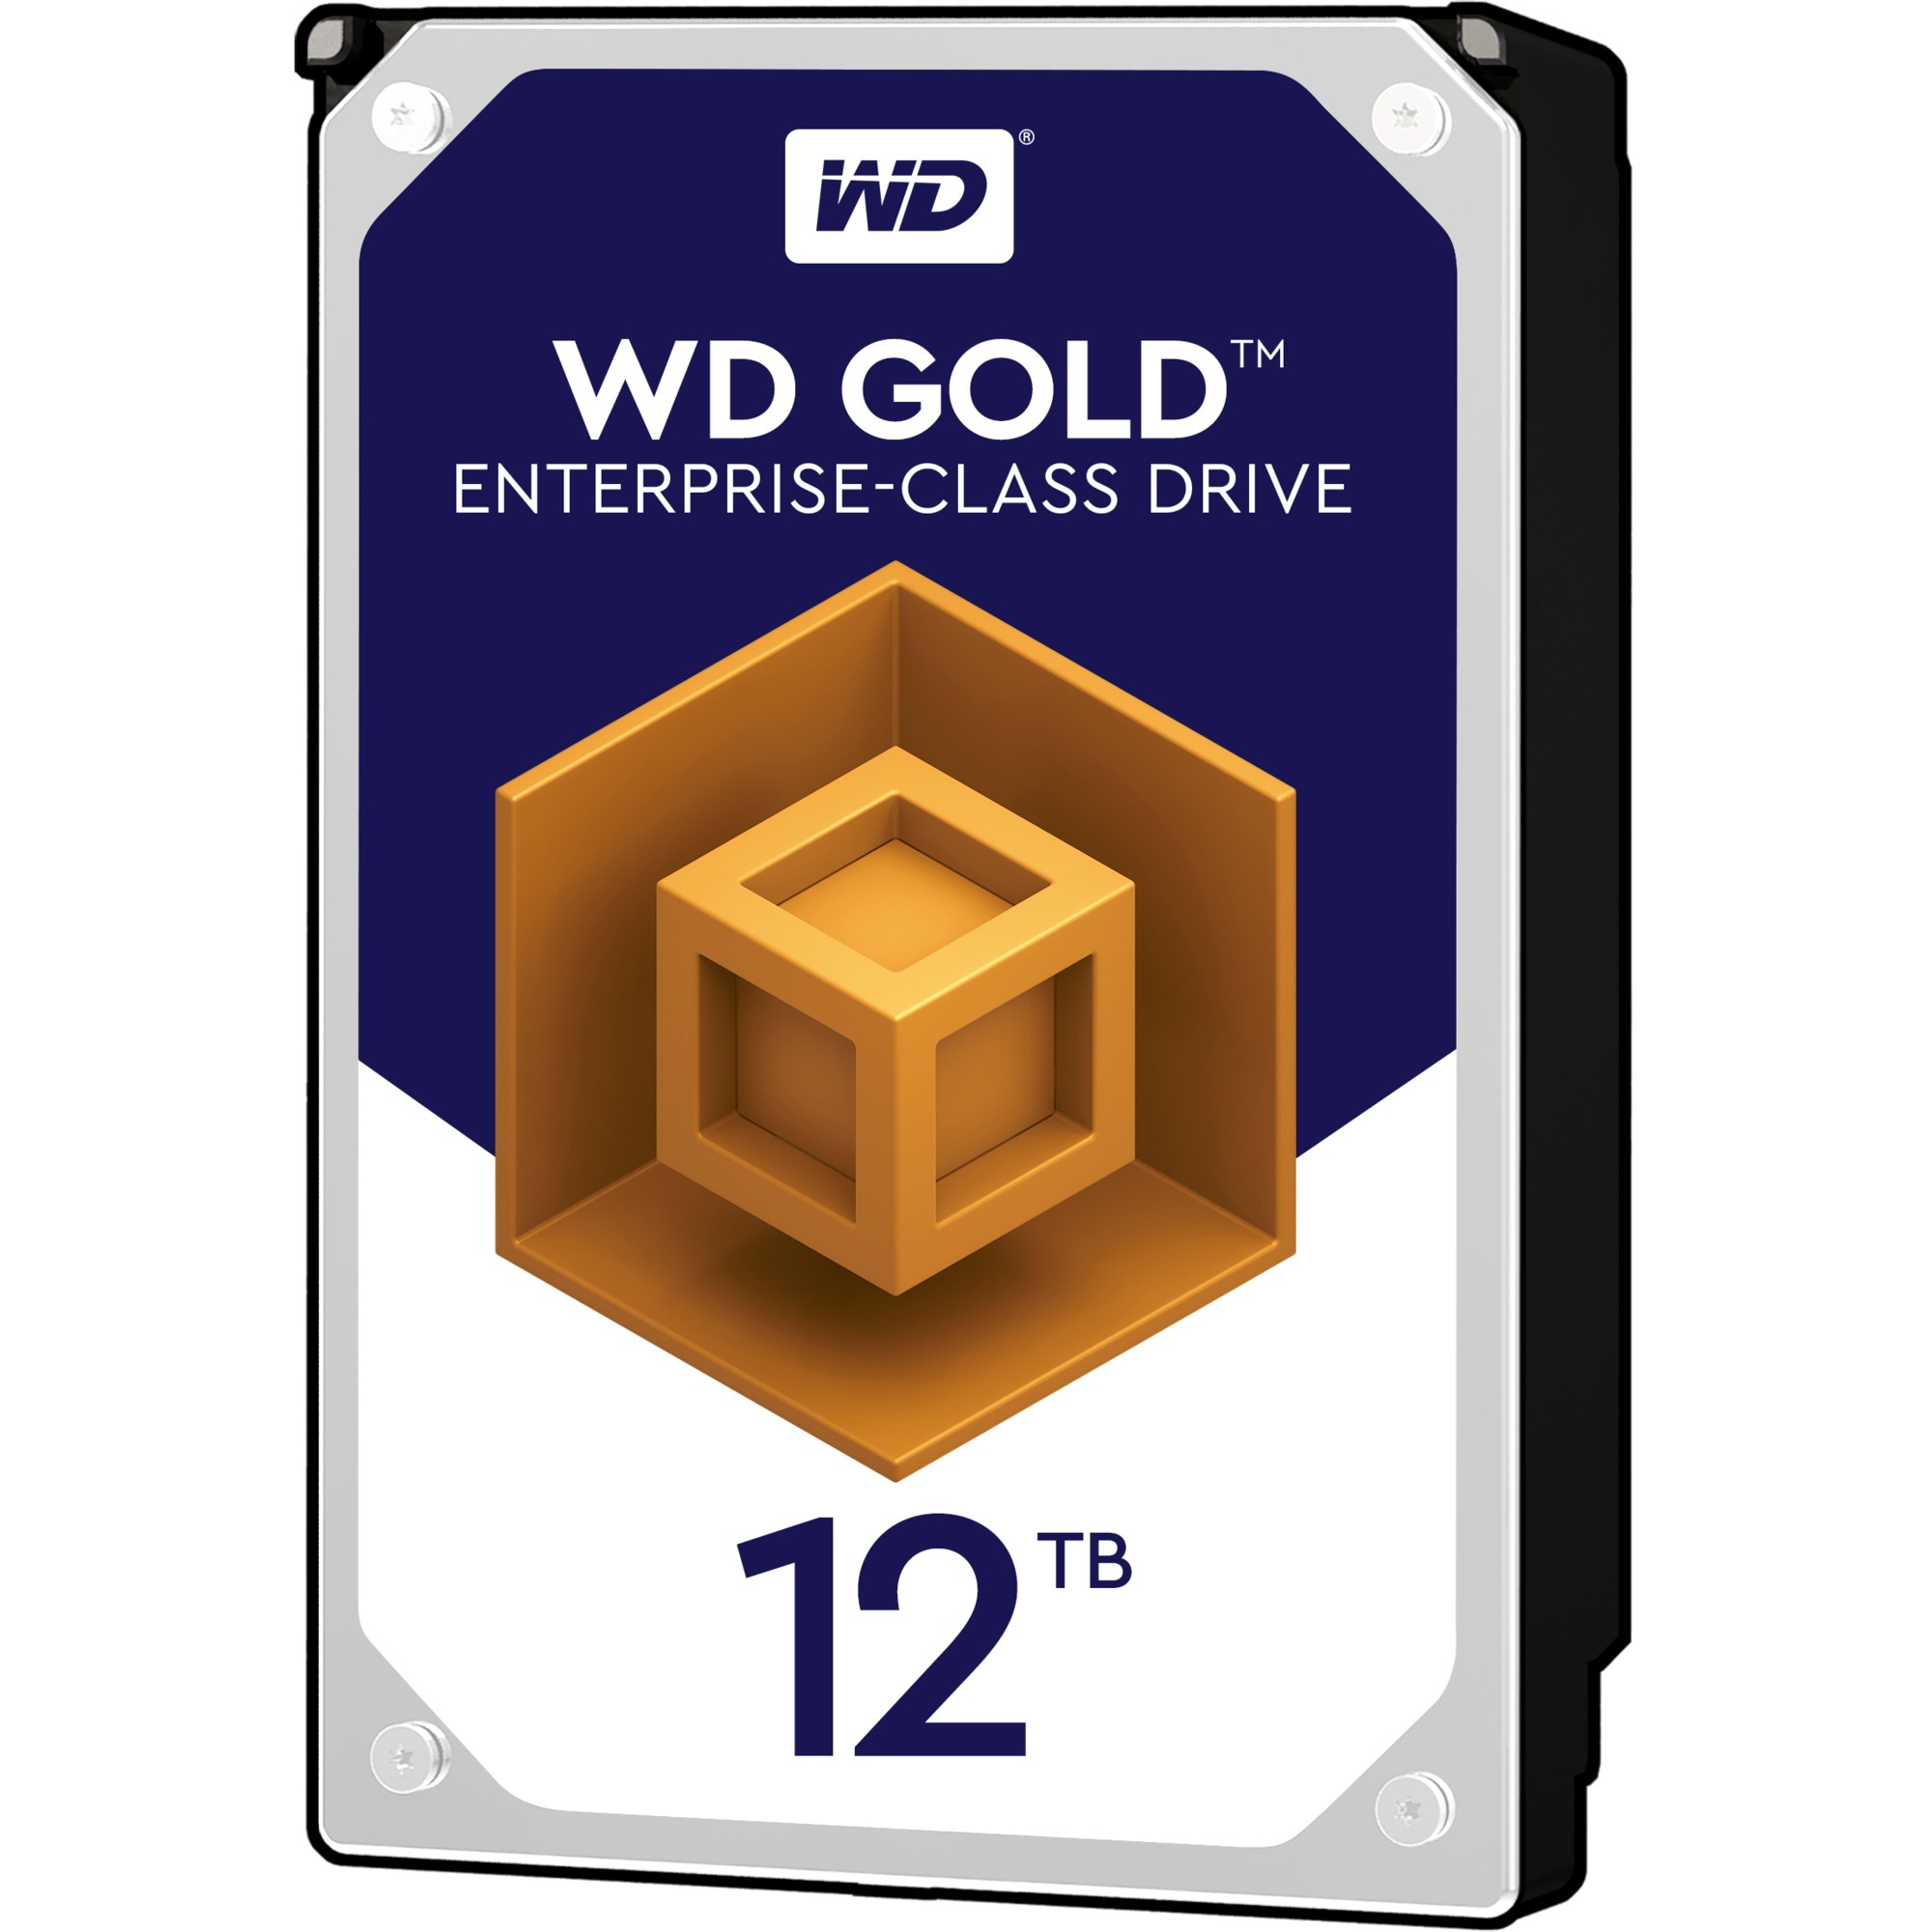 Image of Alternate - Gold Enterprise Class 12 TB , Festplatte online einkaufen bei Alternate